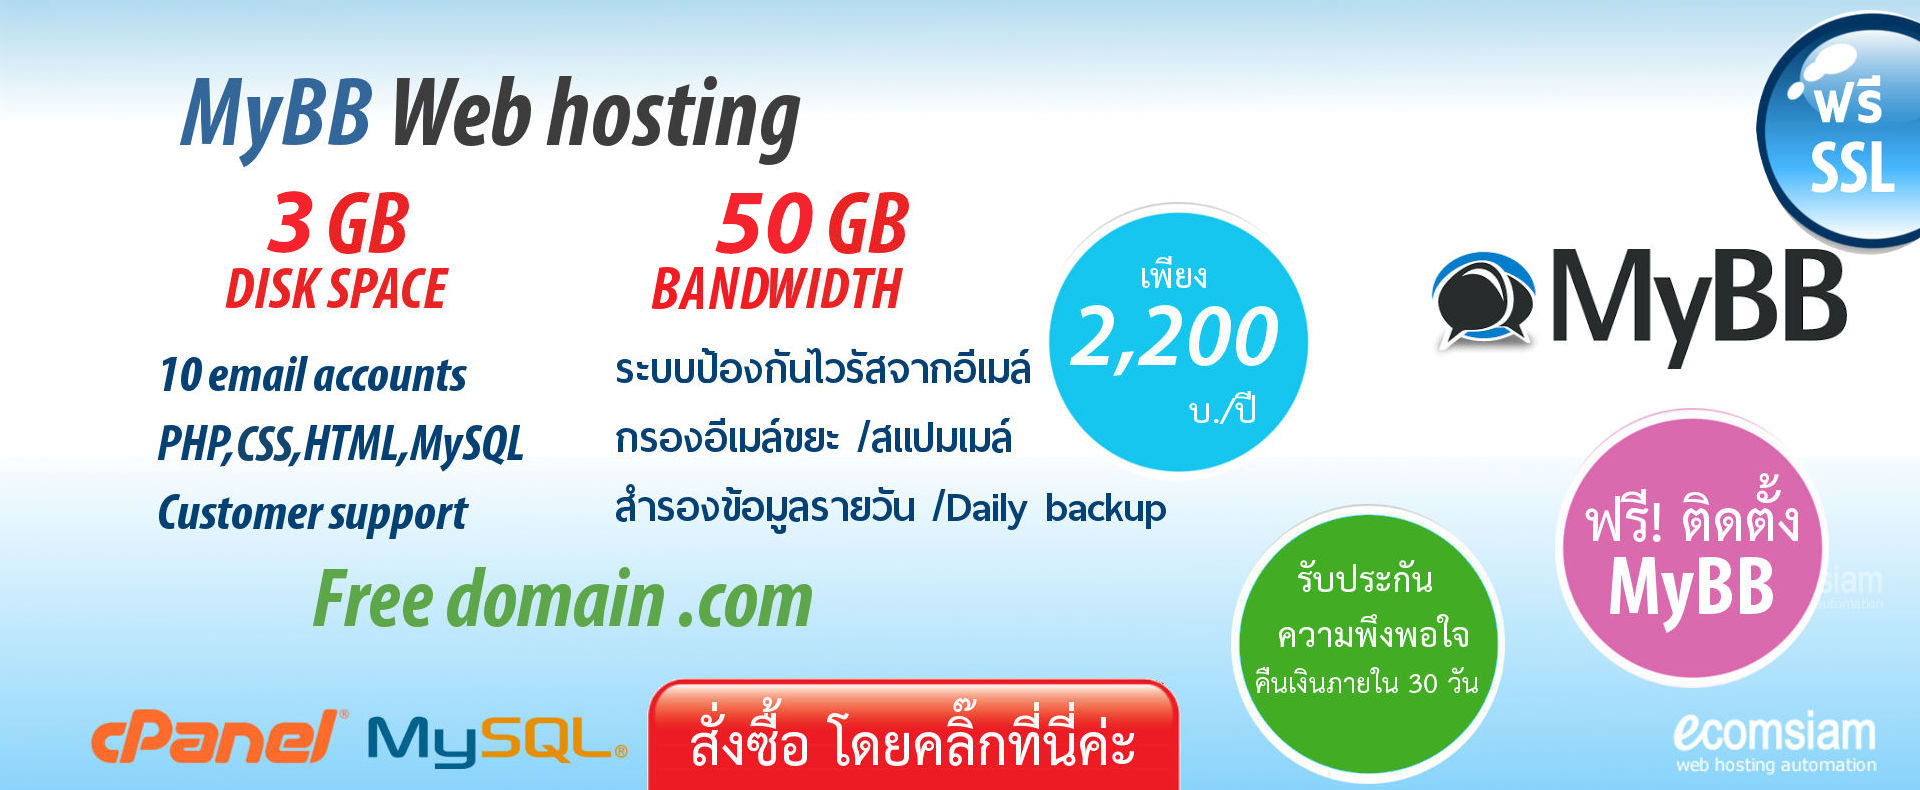 แนะนำ MyBB web hosting thailand เพียง 2,200 บ./ปี เว็บโฮสติ้งไทย ฟรี โดเมน ฟรี SSL ฟรีติดตั้ง แนะนำเว็บโฮสติ้ง บริการลูกค้า  Support ดูแลดี โดย webhostthai.com - MyBB web hosting thailand free domain